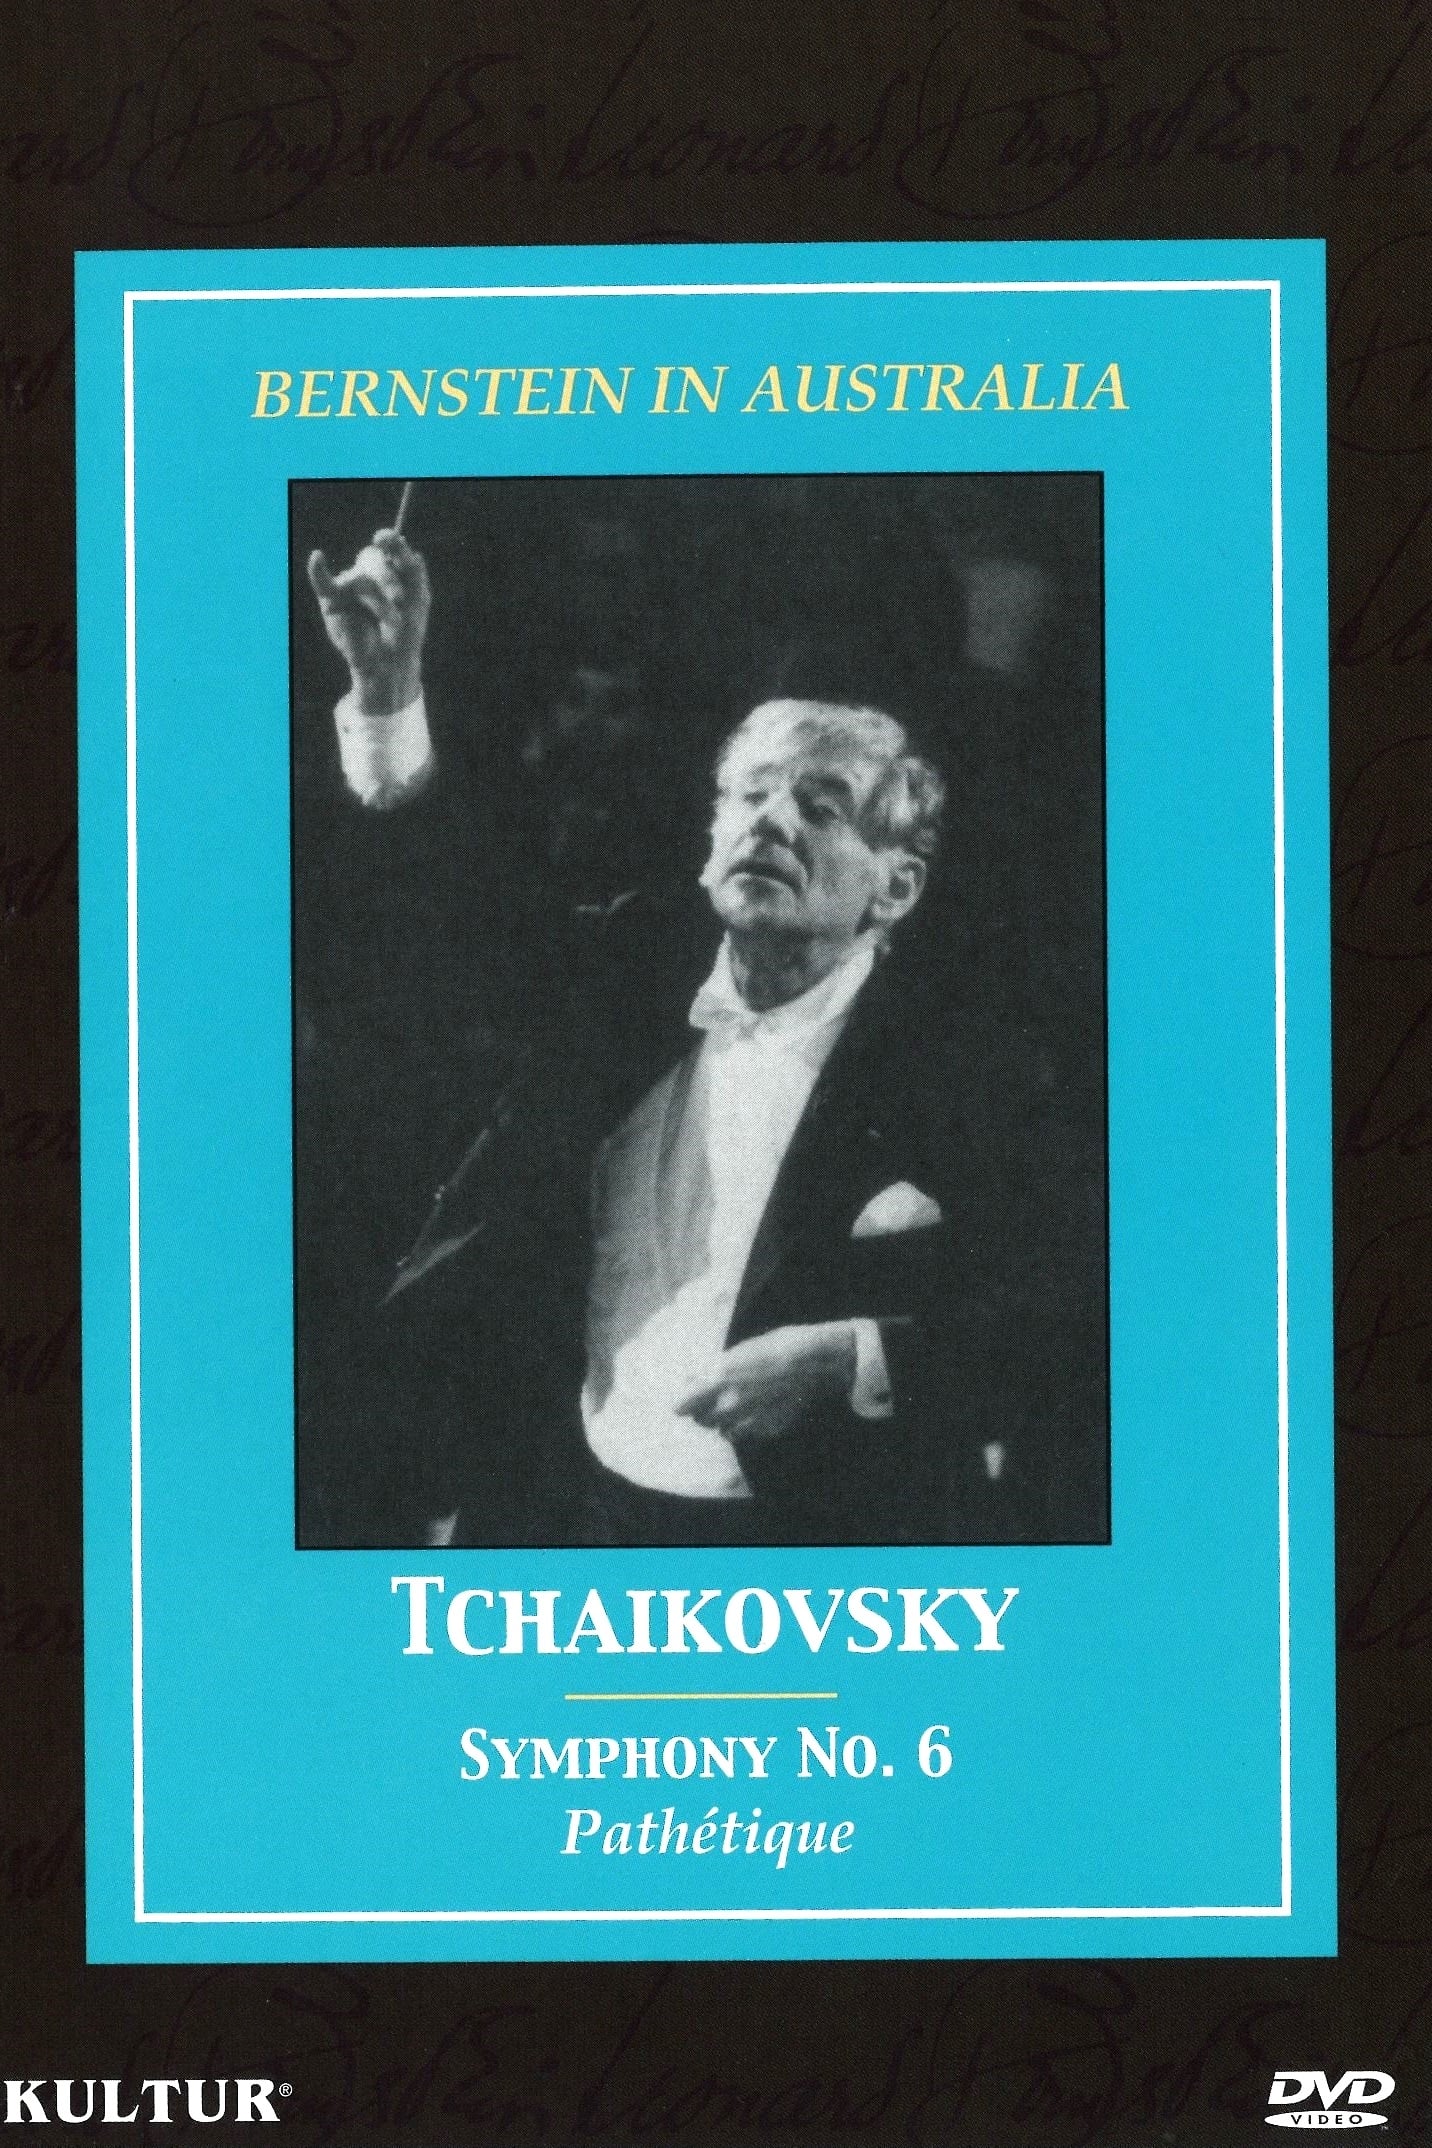 Bernstein in Australia: Tchaikovsky